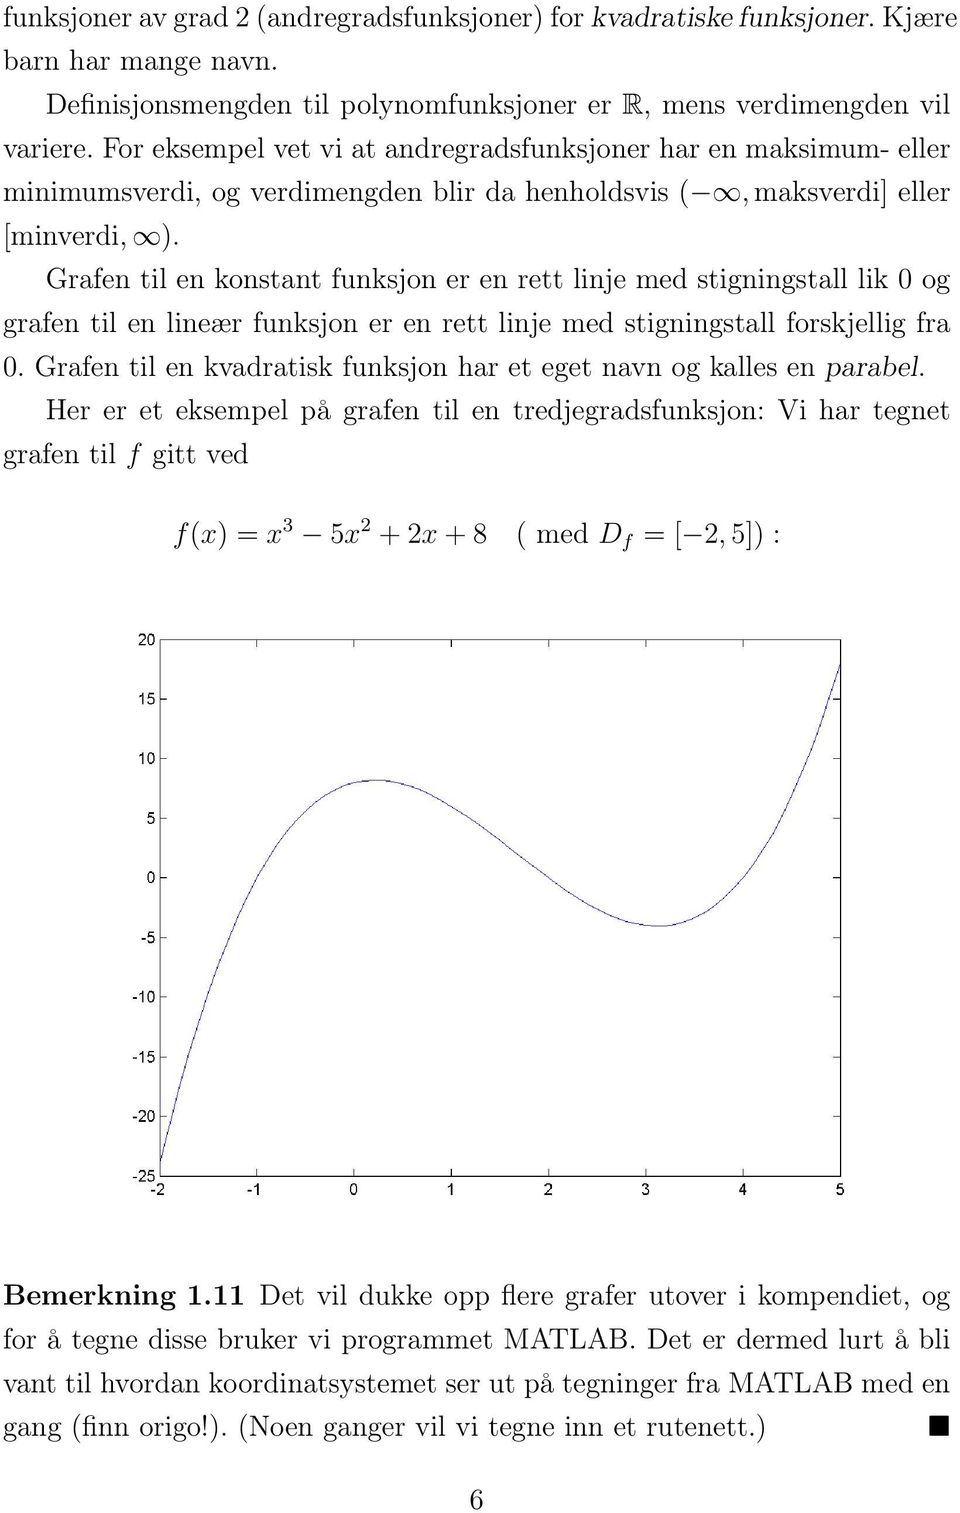 Grafen til en konstant funksjon er en rett linje med stigningstall lik 0 og grafen til en lineær funksjon er en rett linje med stigningstall forskjellig fra 0.